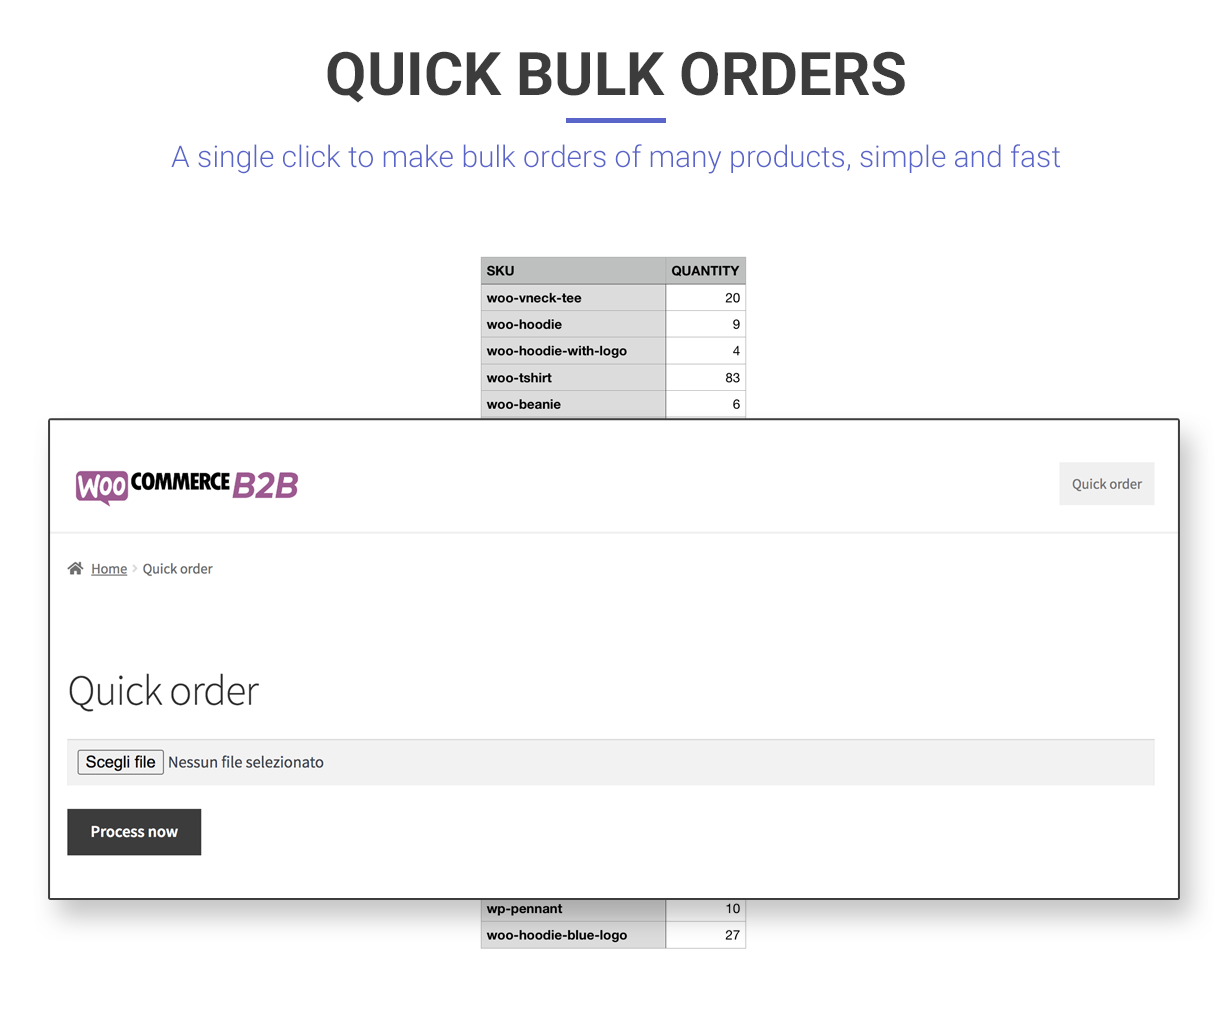 WooCommerce B2B - Quick bulk orders